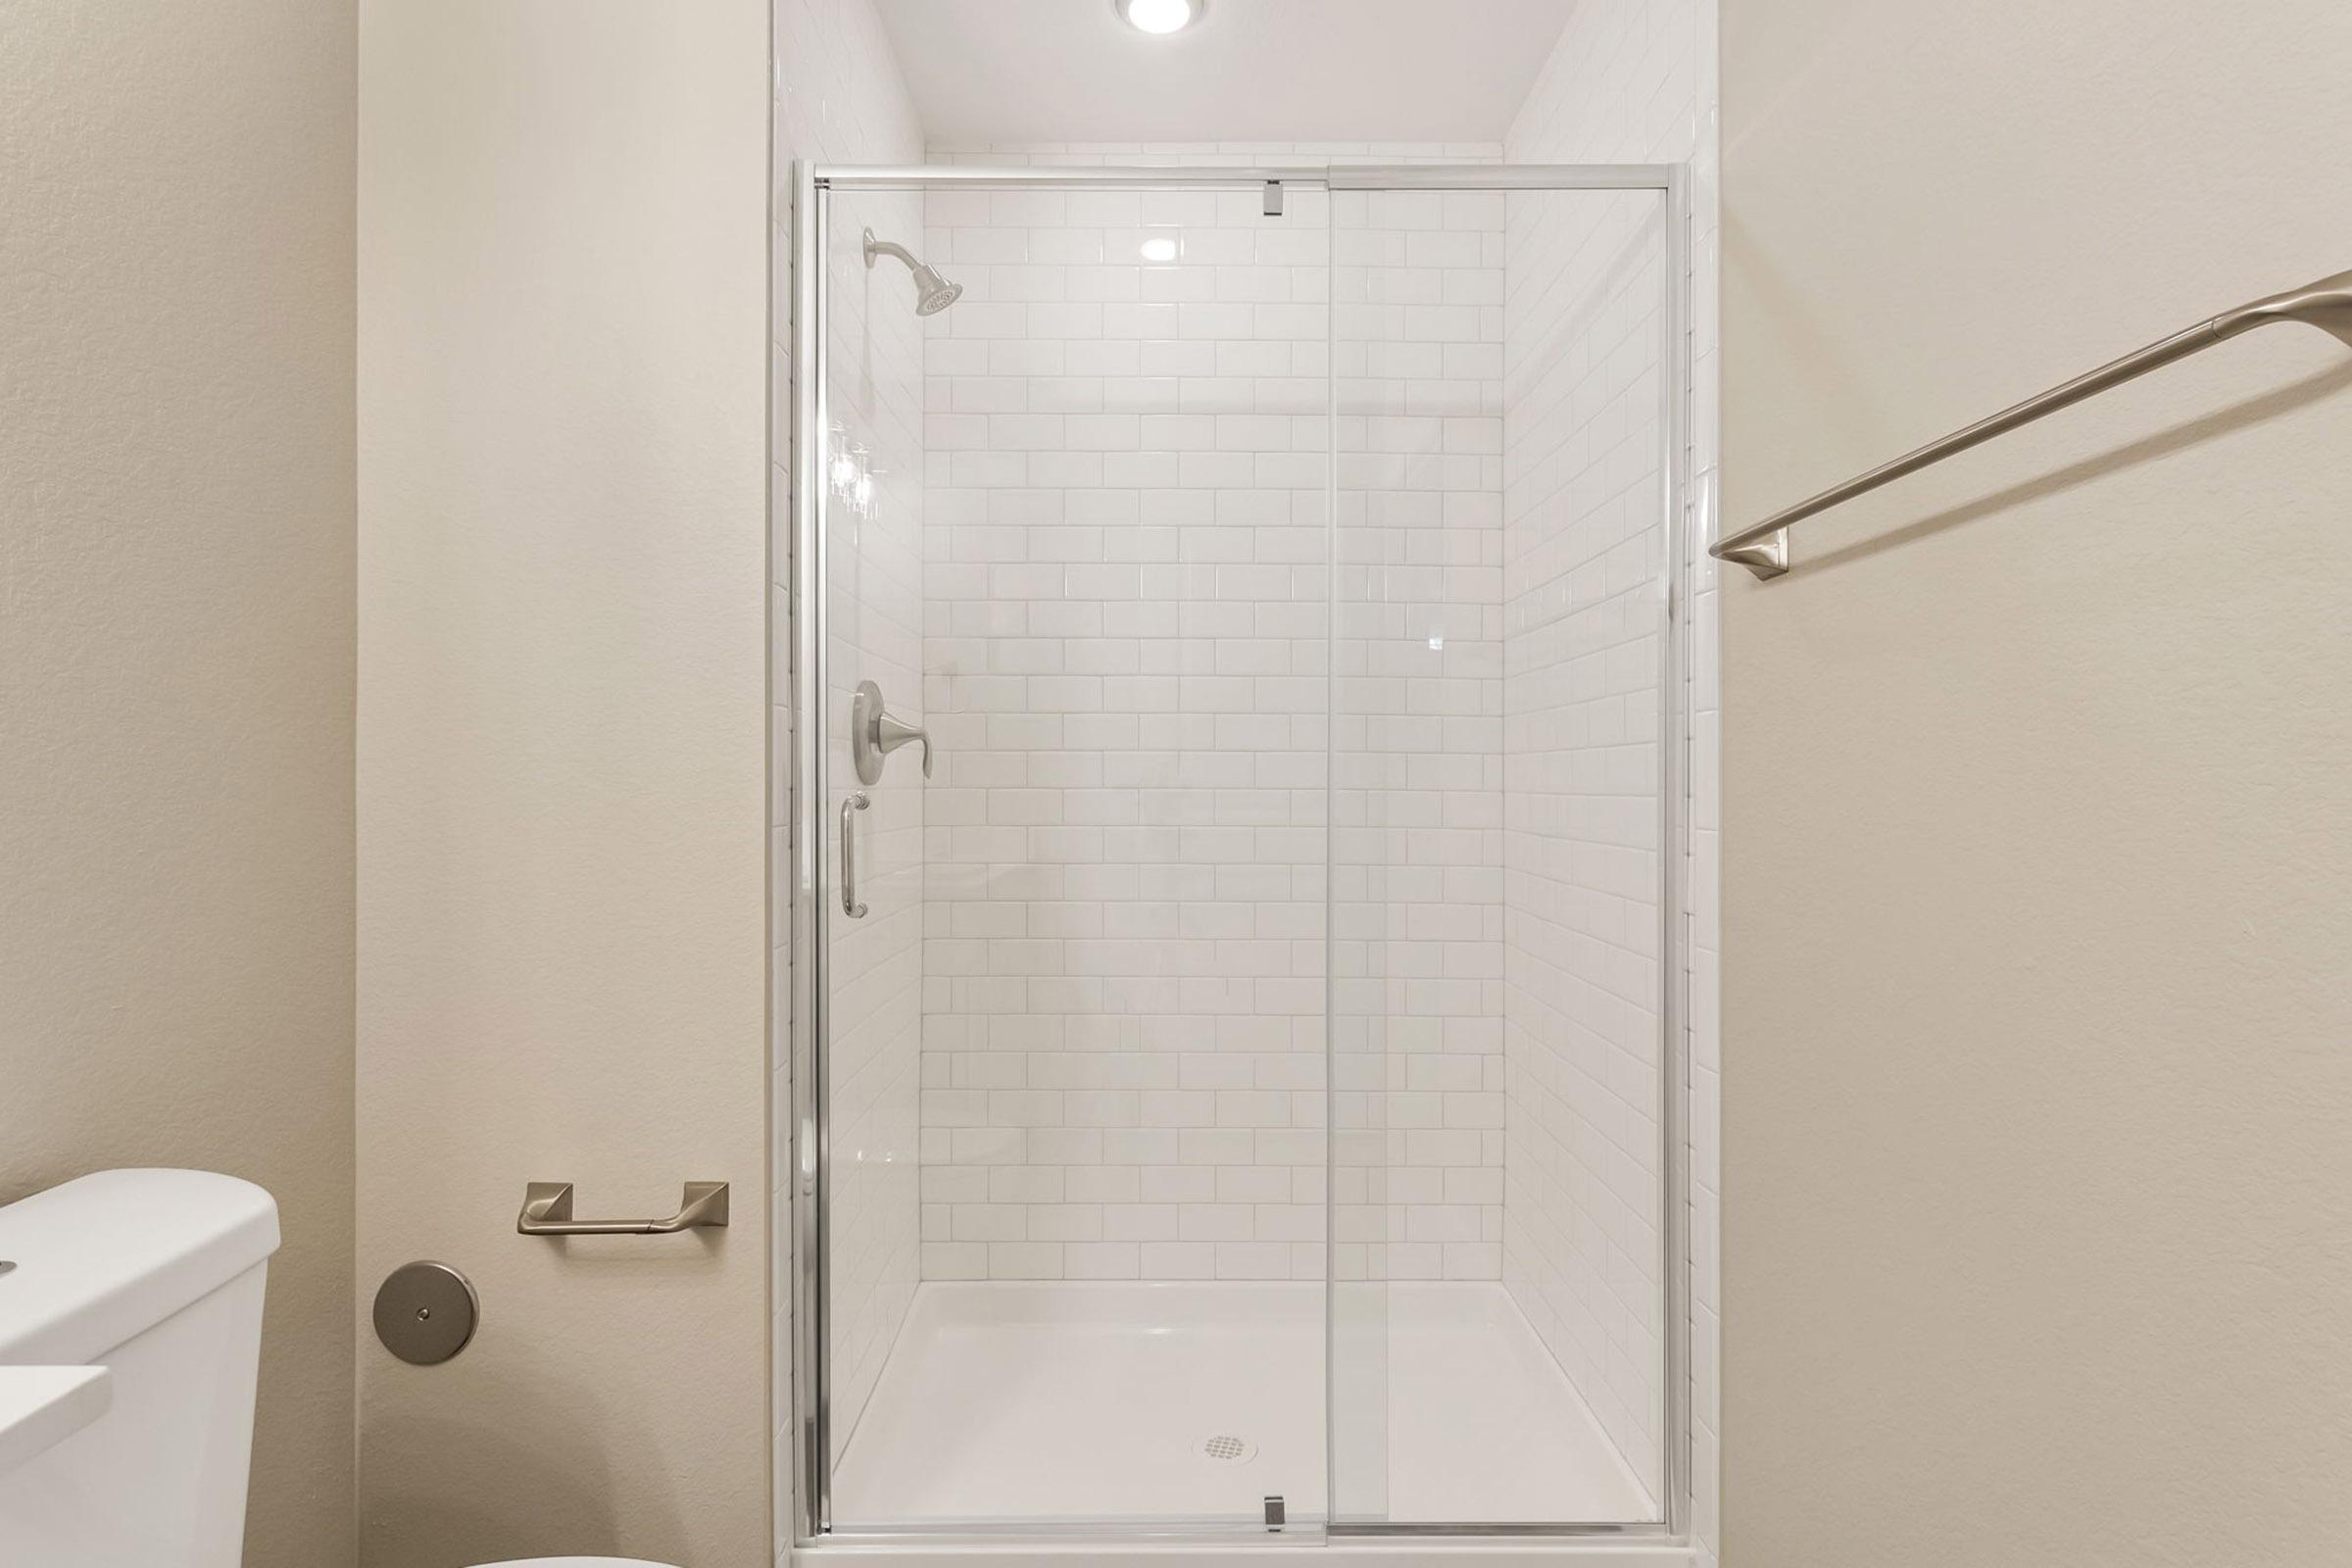 a glass shower door